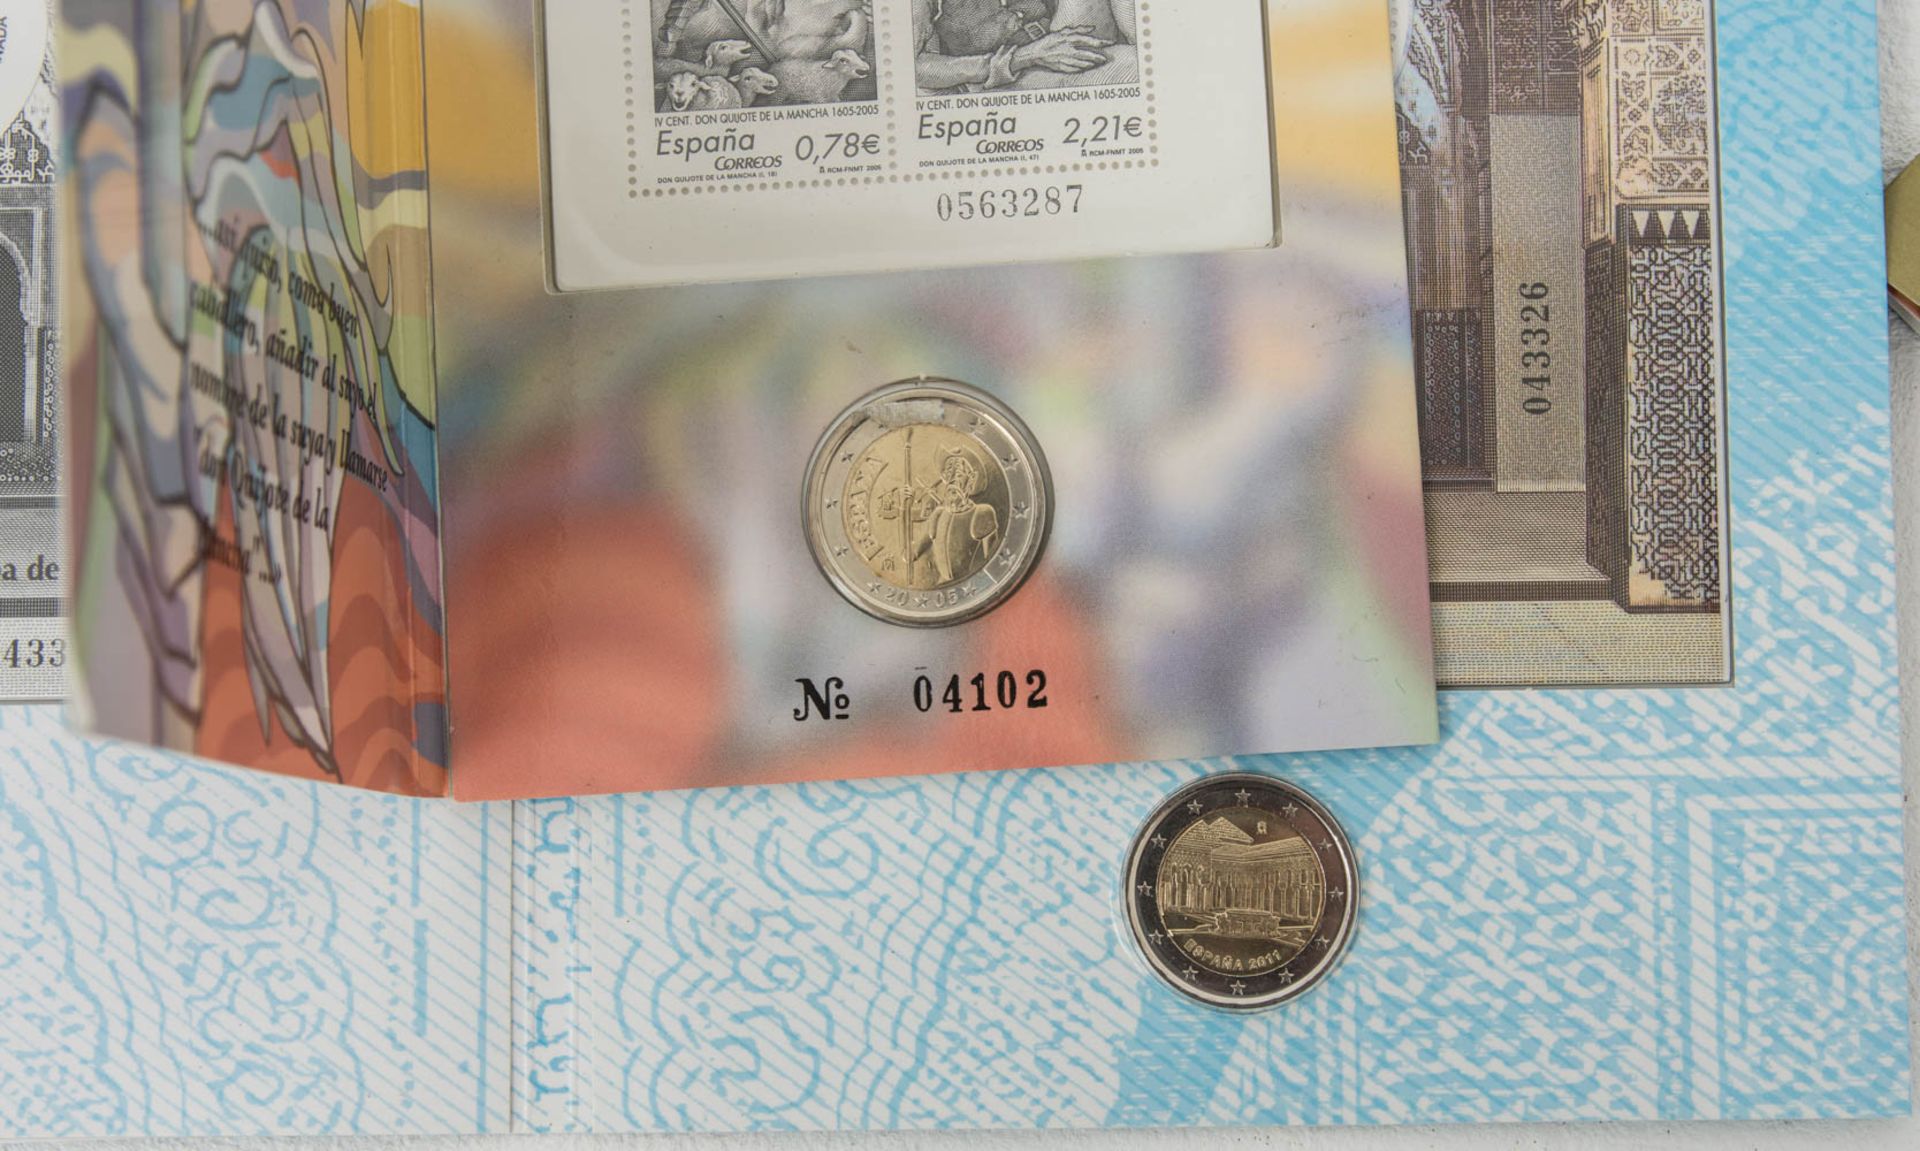 Münzsammlung Gedenkmünzen Europa mit Silber.durchweg Sammlerqualität in Ausgabefold - Image 4 of 4